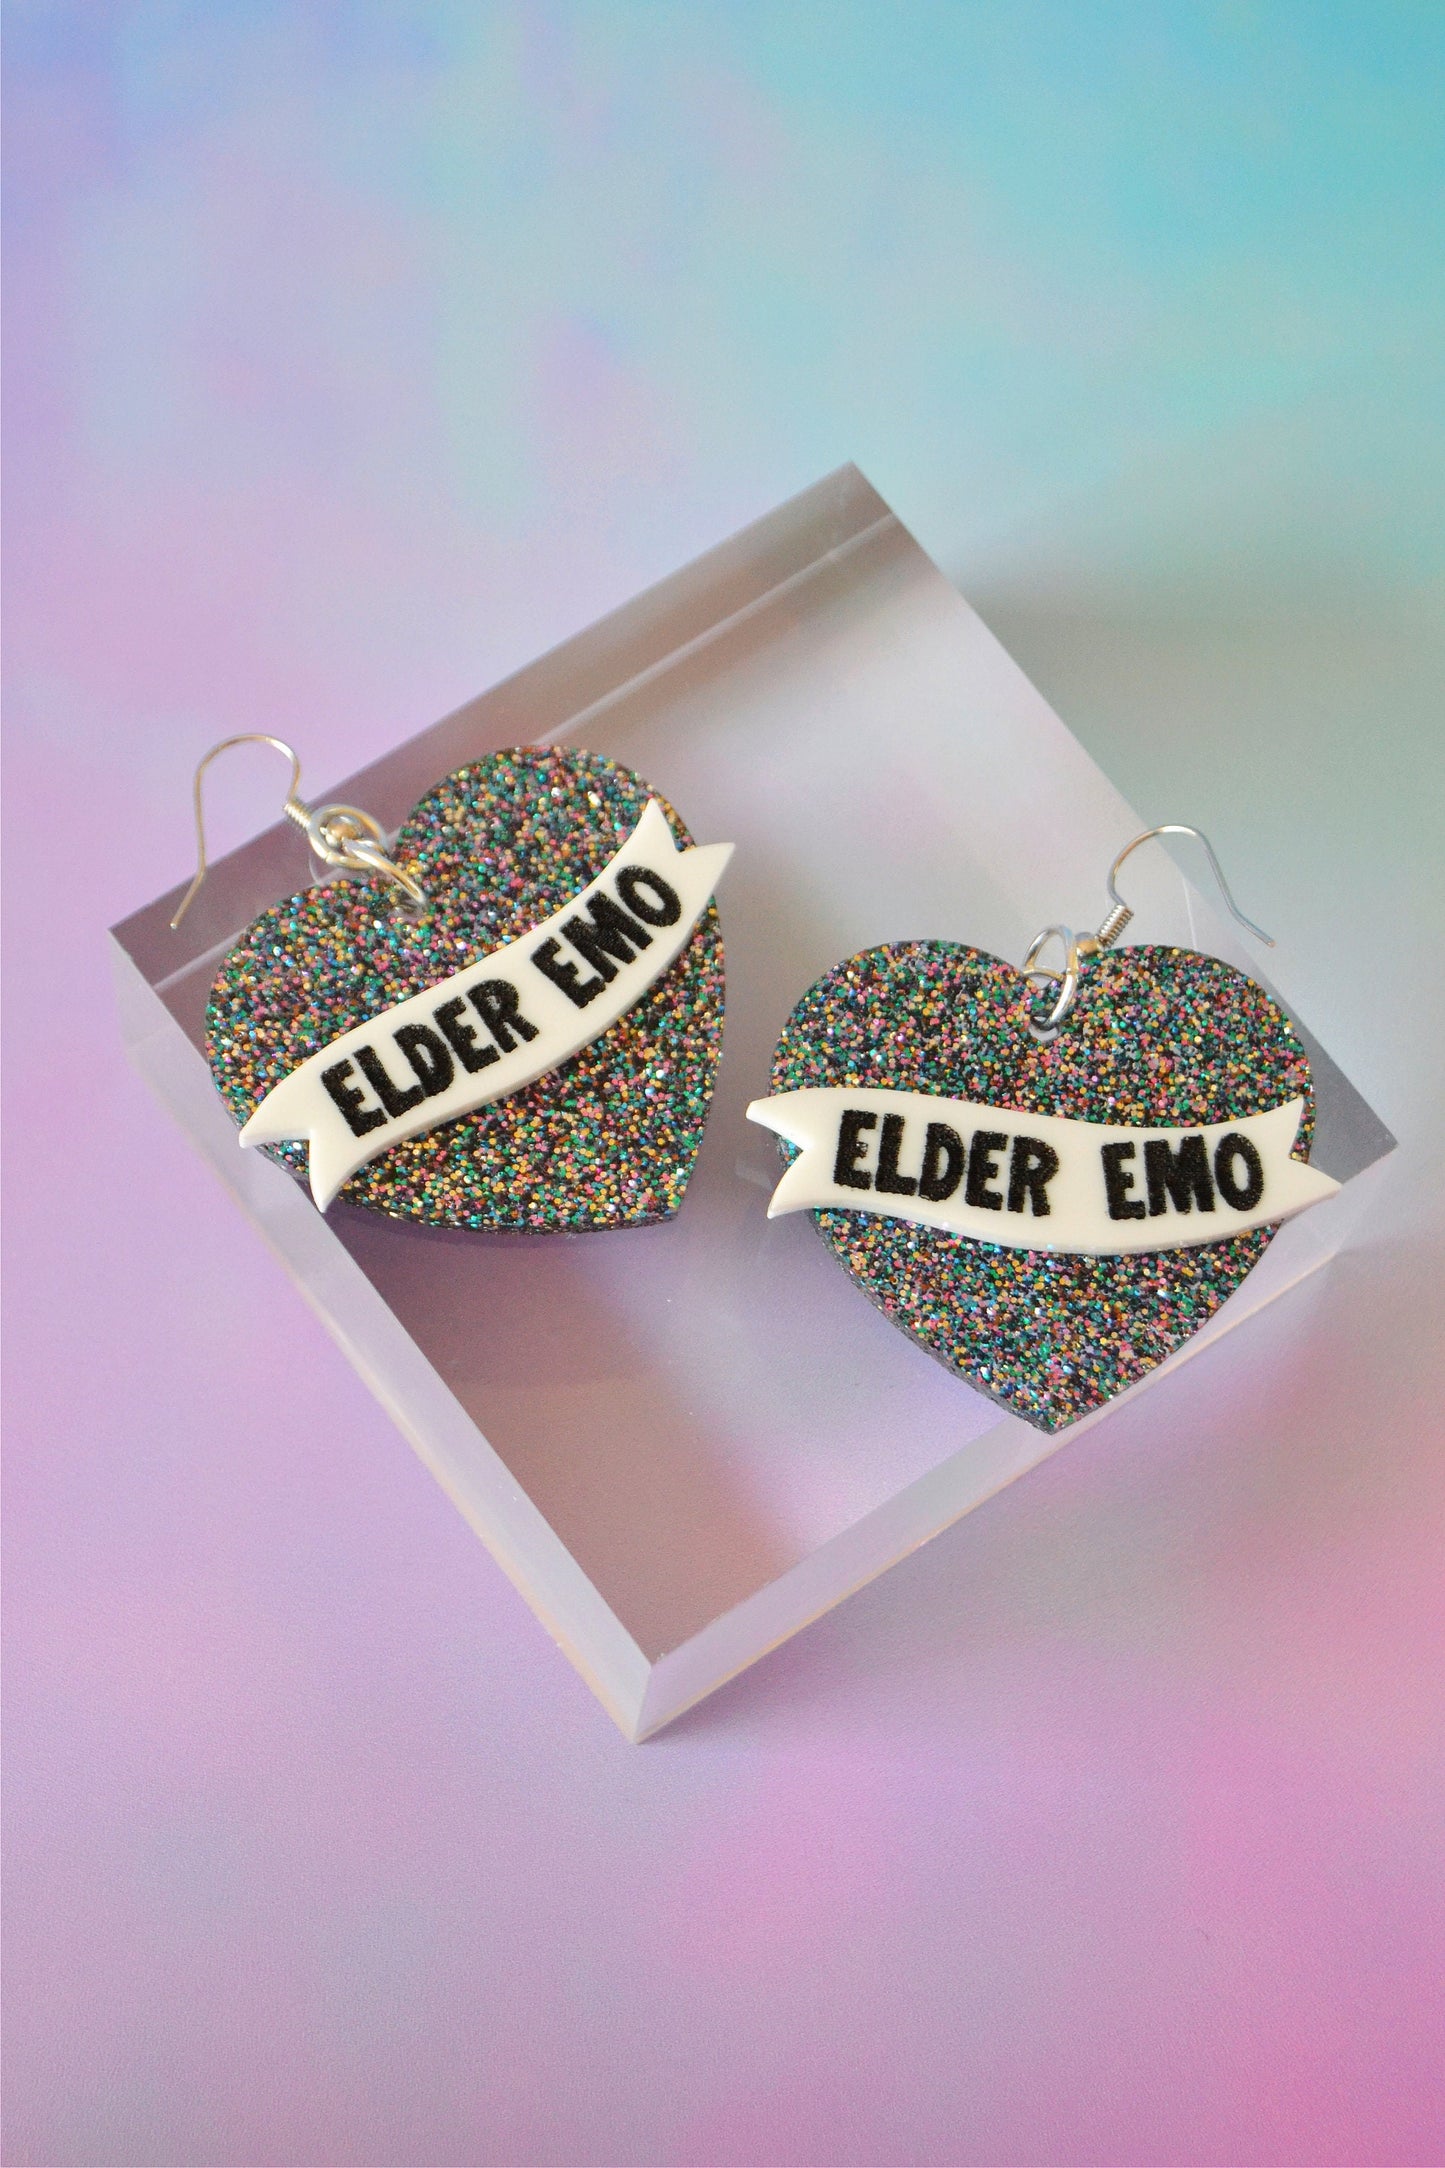 Elder Emo Heart Earrings